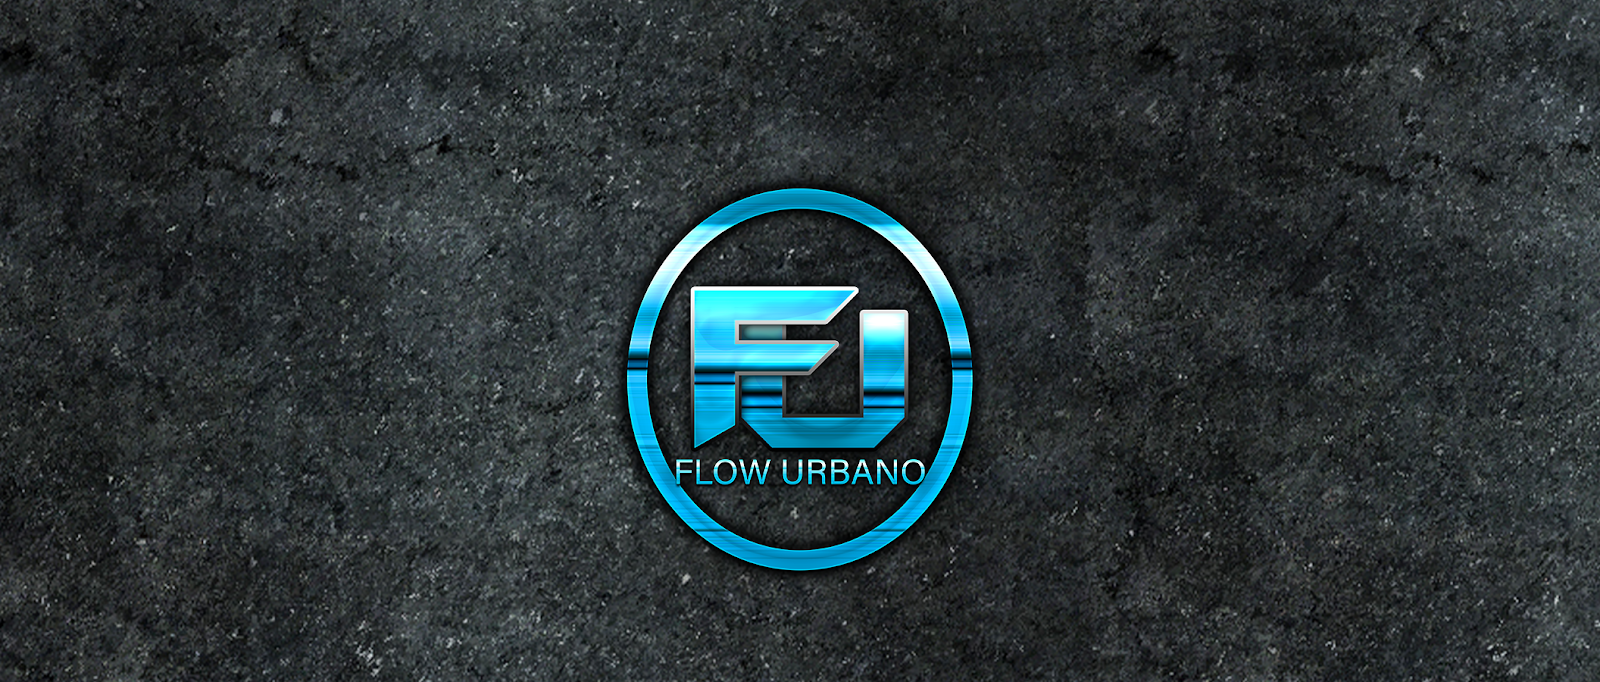 Flow Urbano Music - Pagina Web De Reggaeton Y Trap